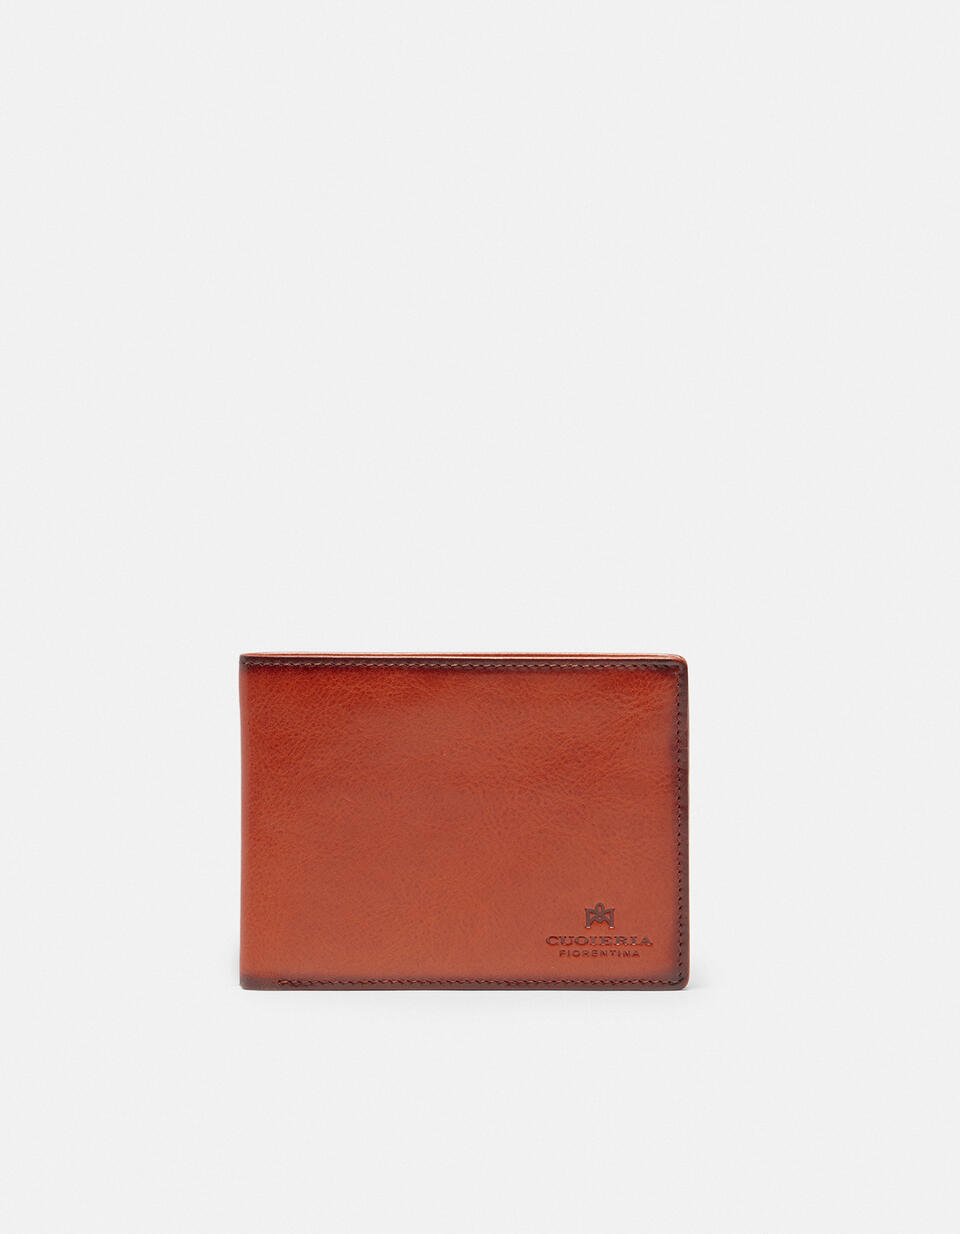 Bifold wallet Orange  - Women's Wallets - Men's Wallets - Wallets - Cuoieria Fiorentina